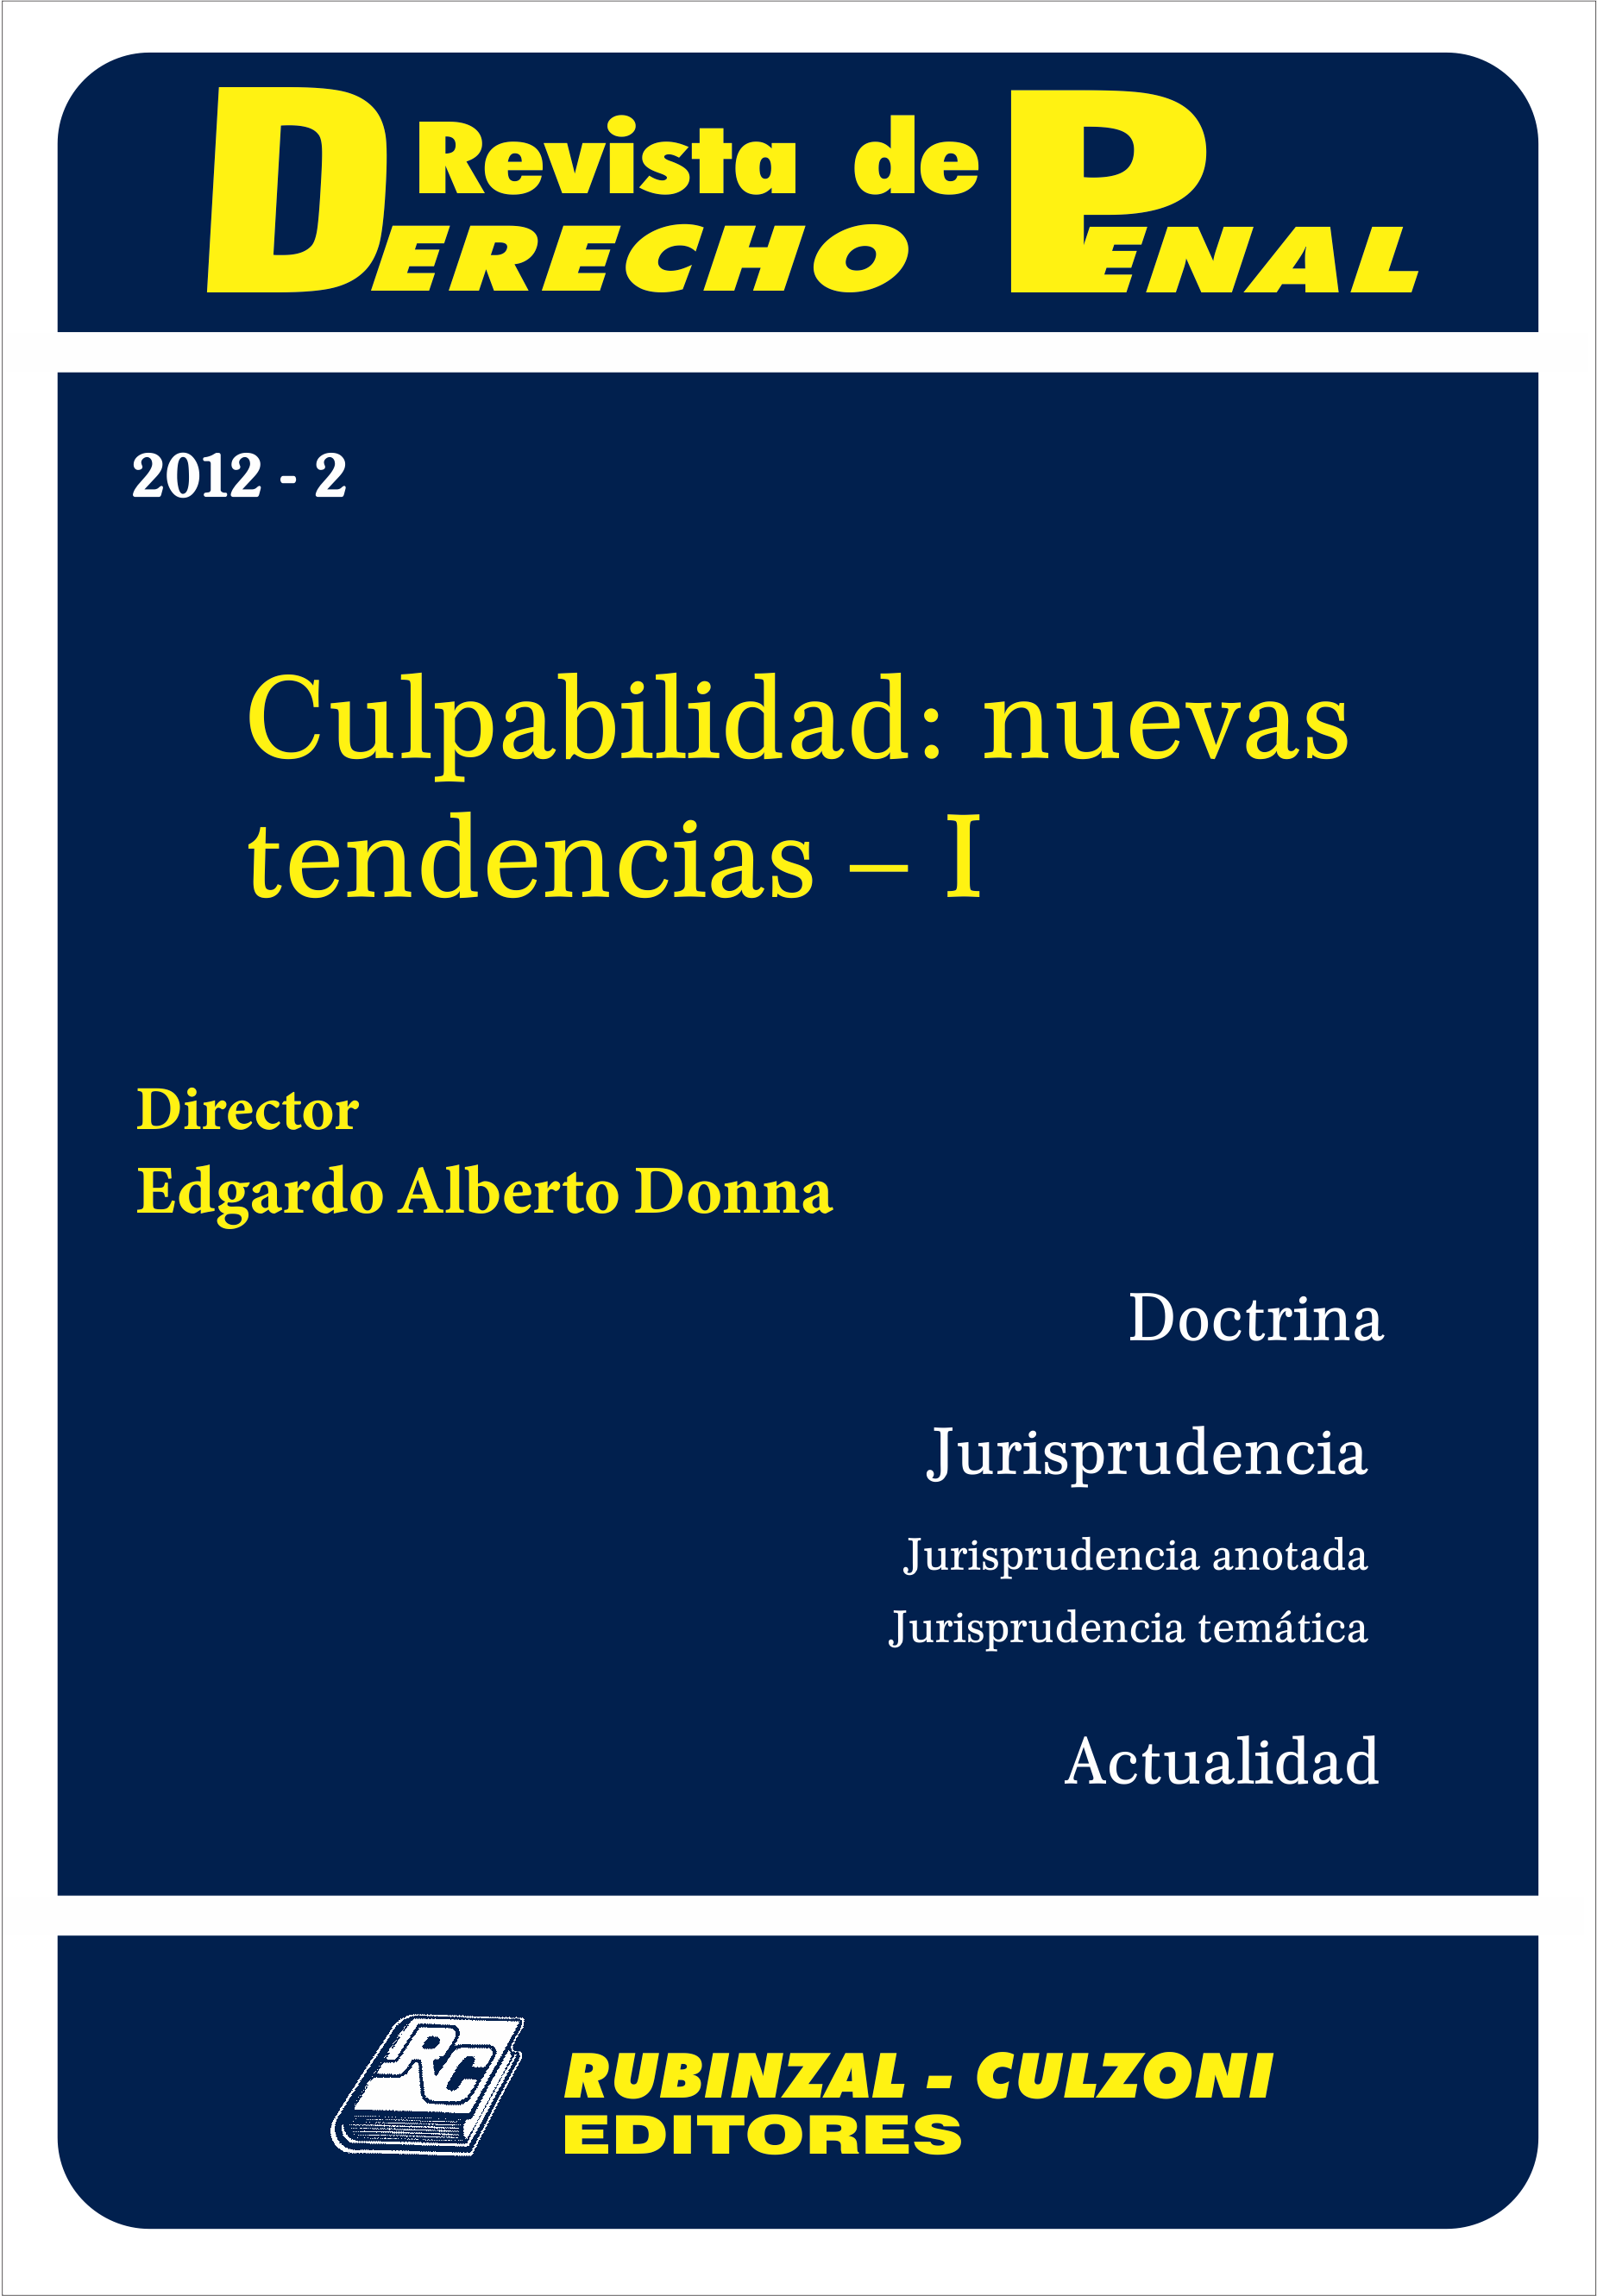 Revista de Derecho Penal - Culpabilidad: nuevas tendencias - I